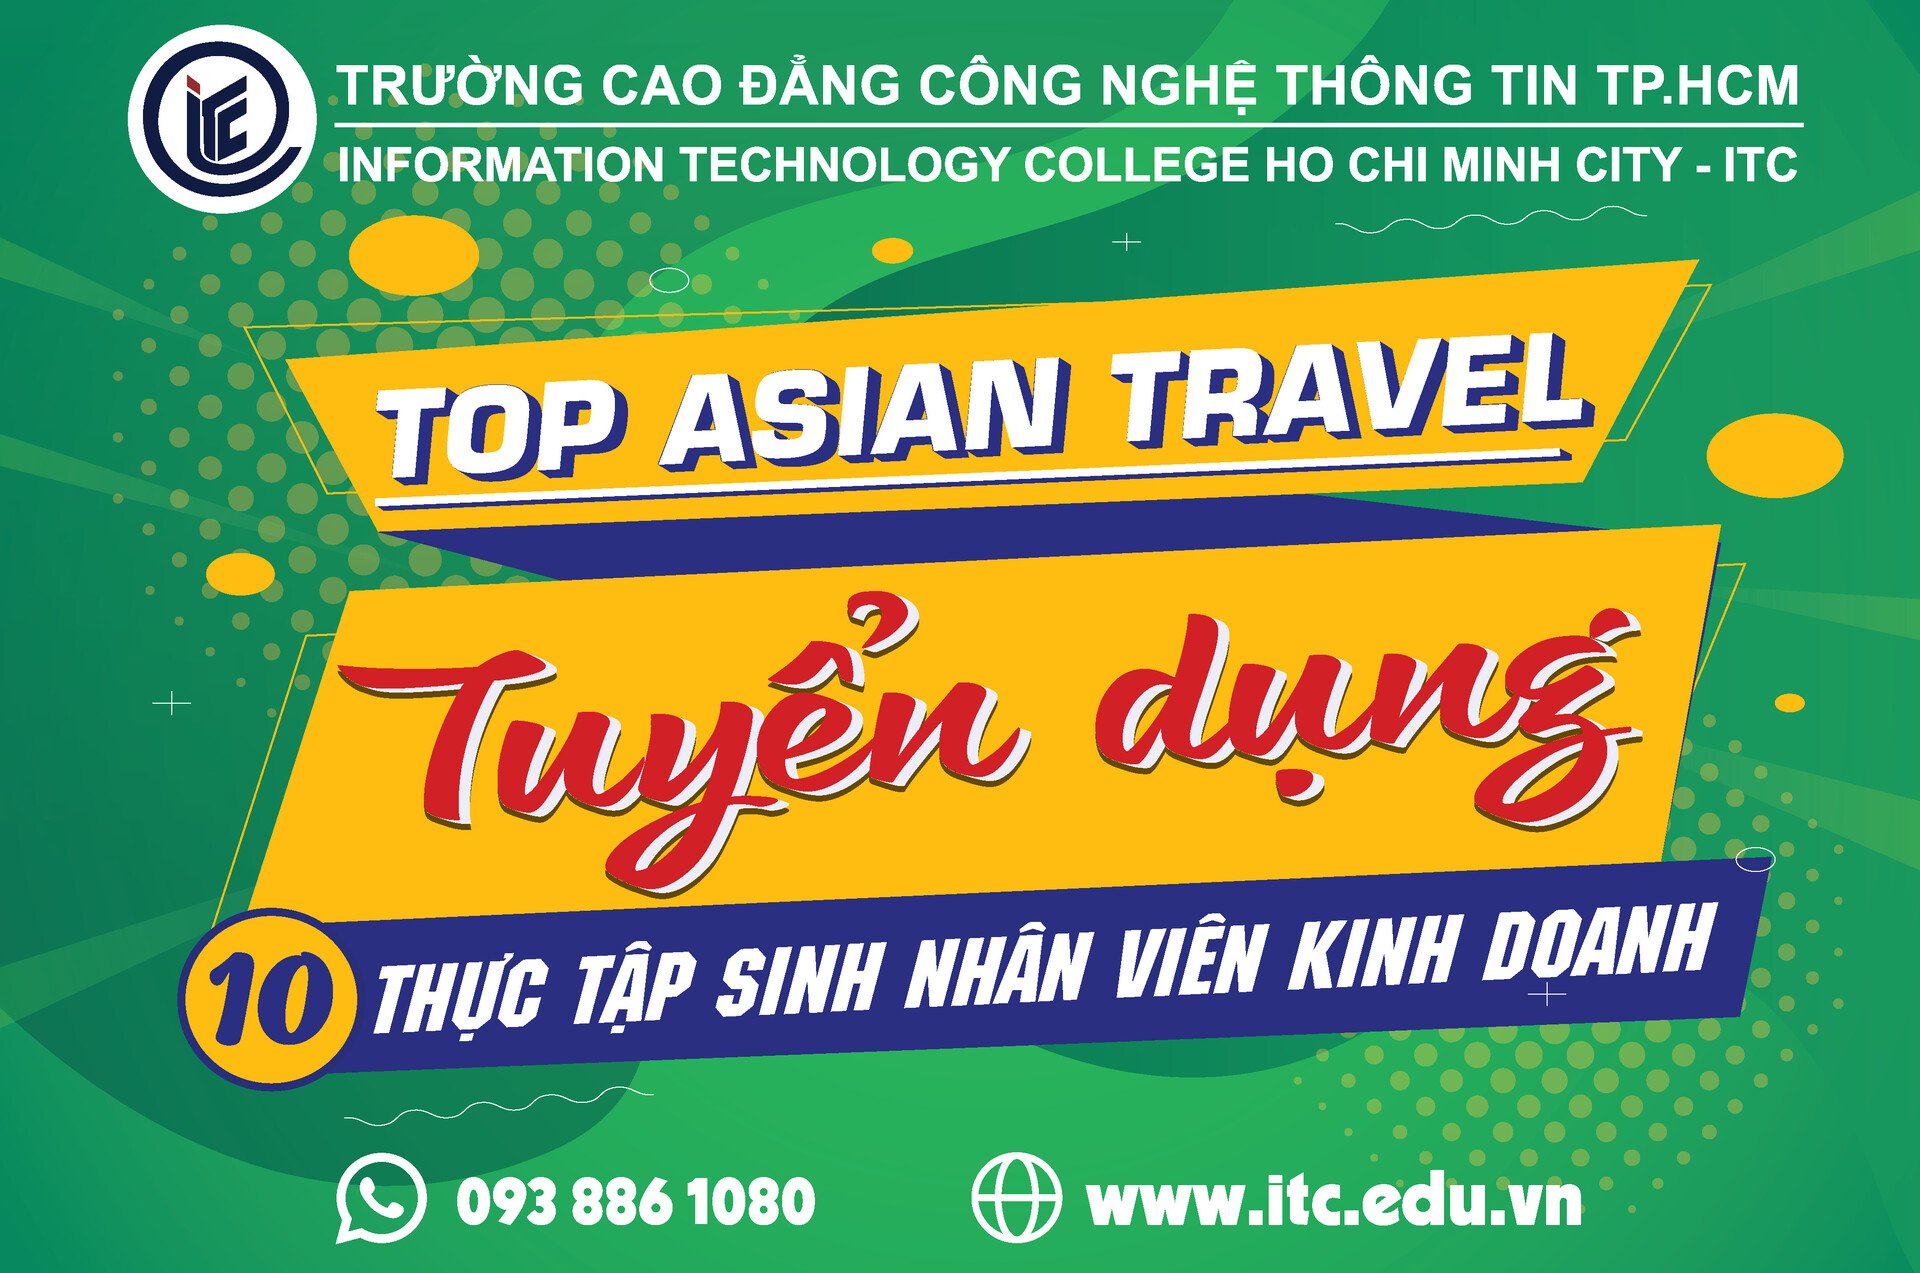 Công ty Top Asian Travel tuyển dụng 10 thực tập sinh kinh doanh